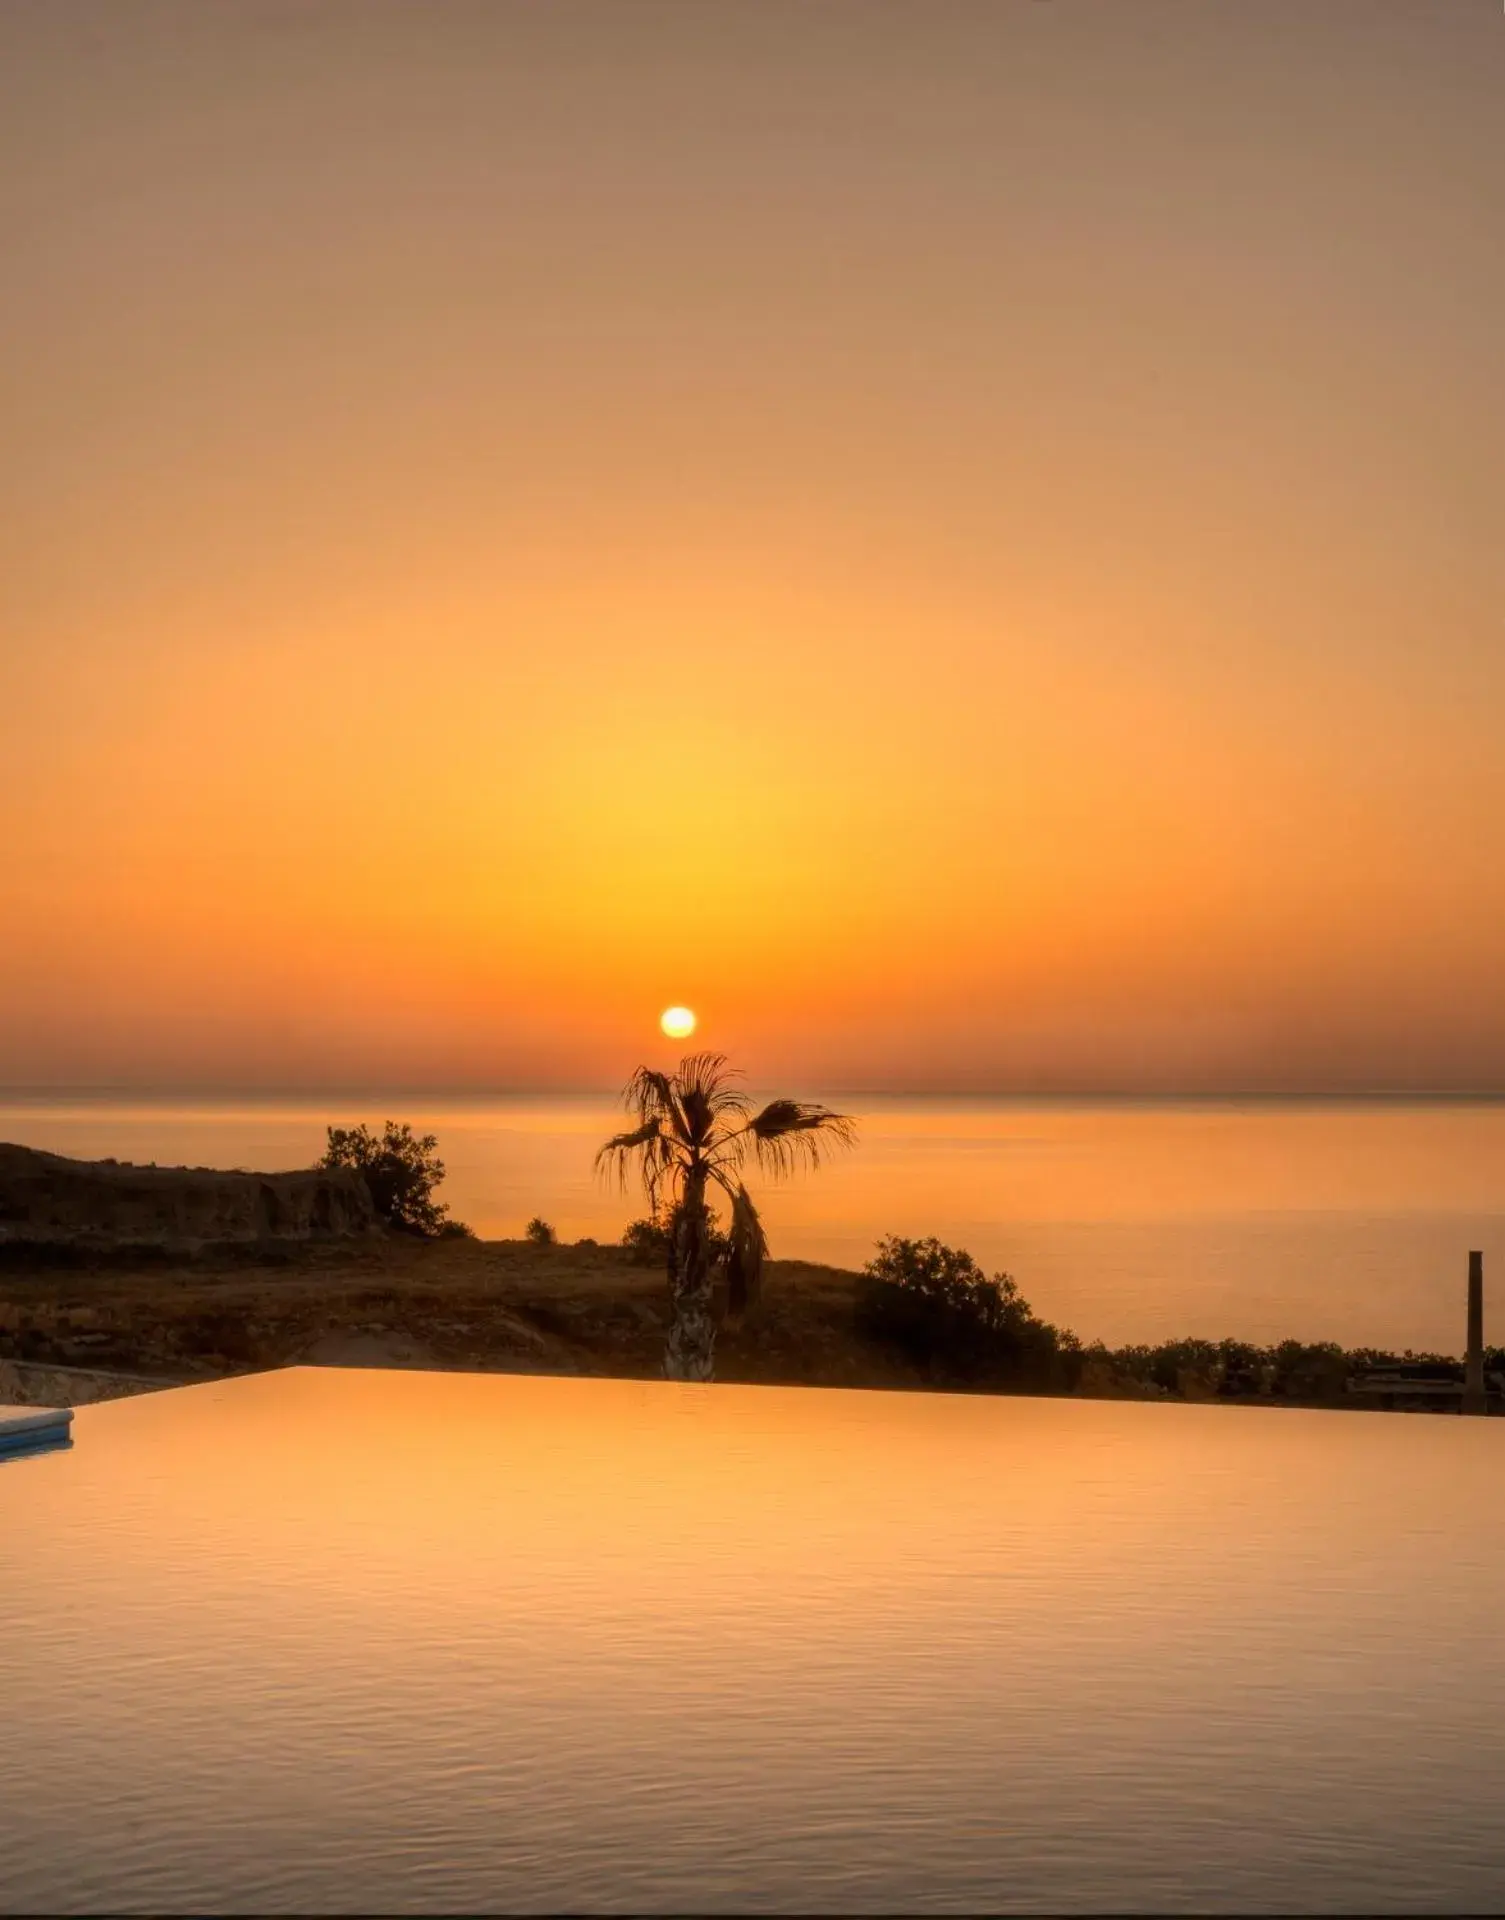 Sunrise/Sunset in Desiterra Resort